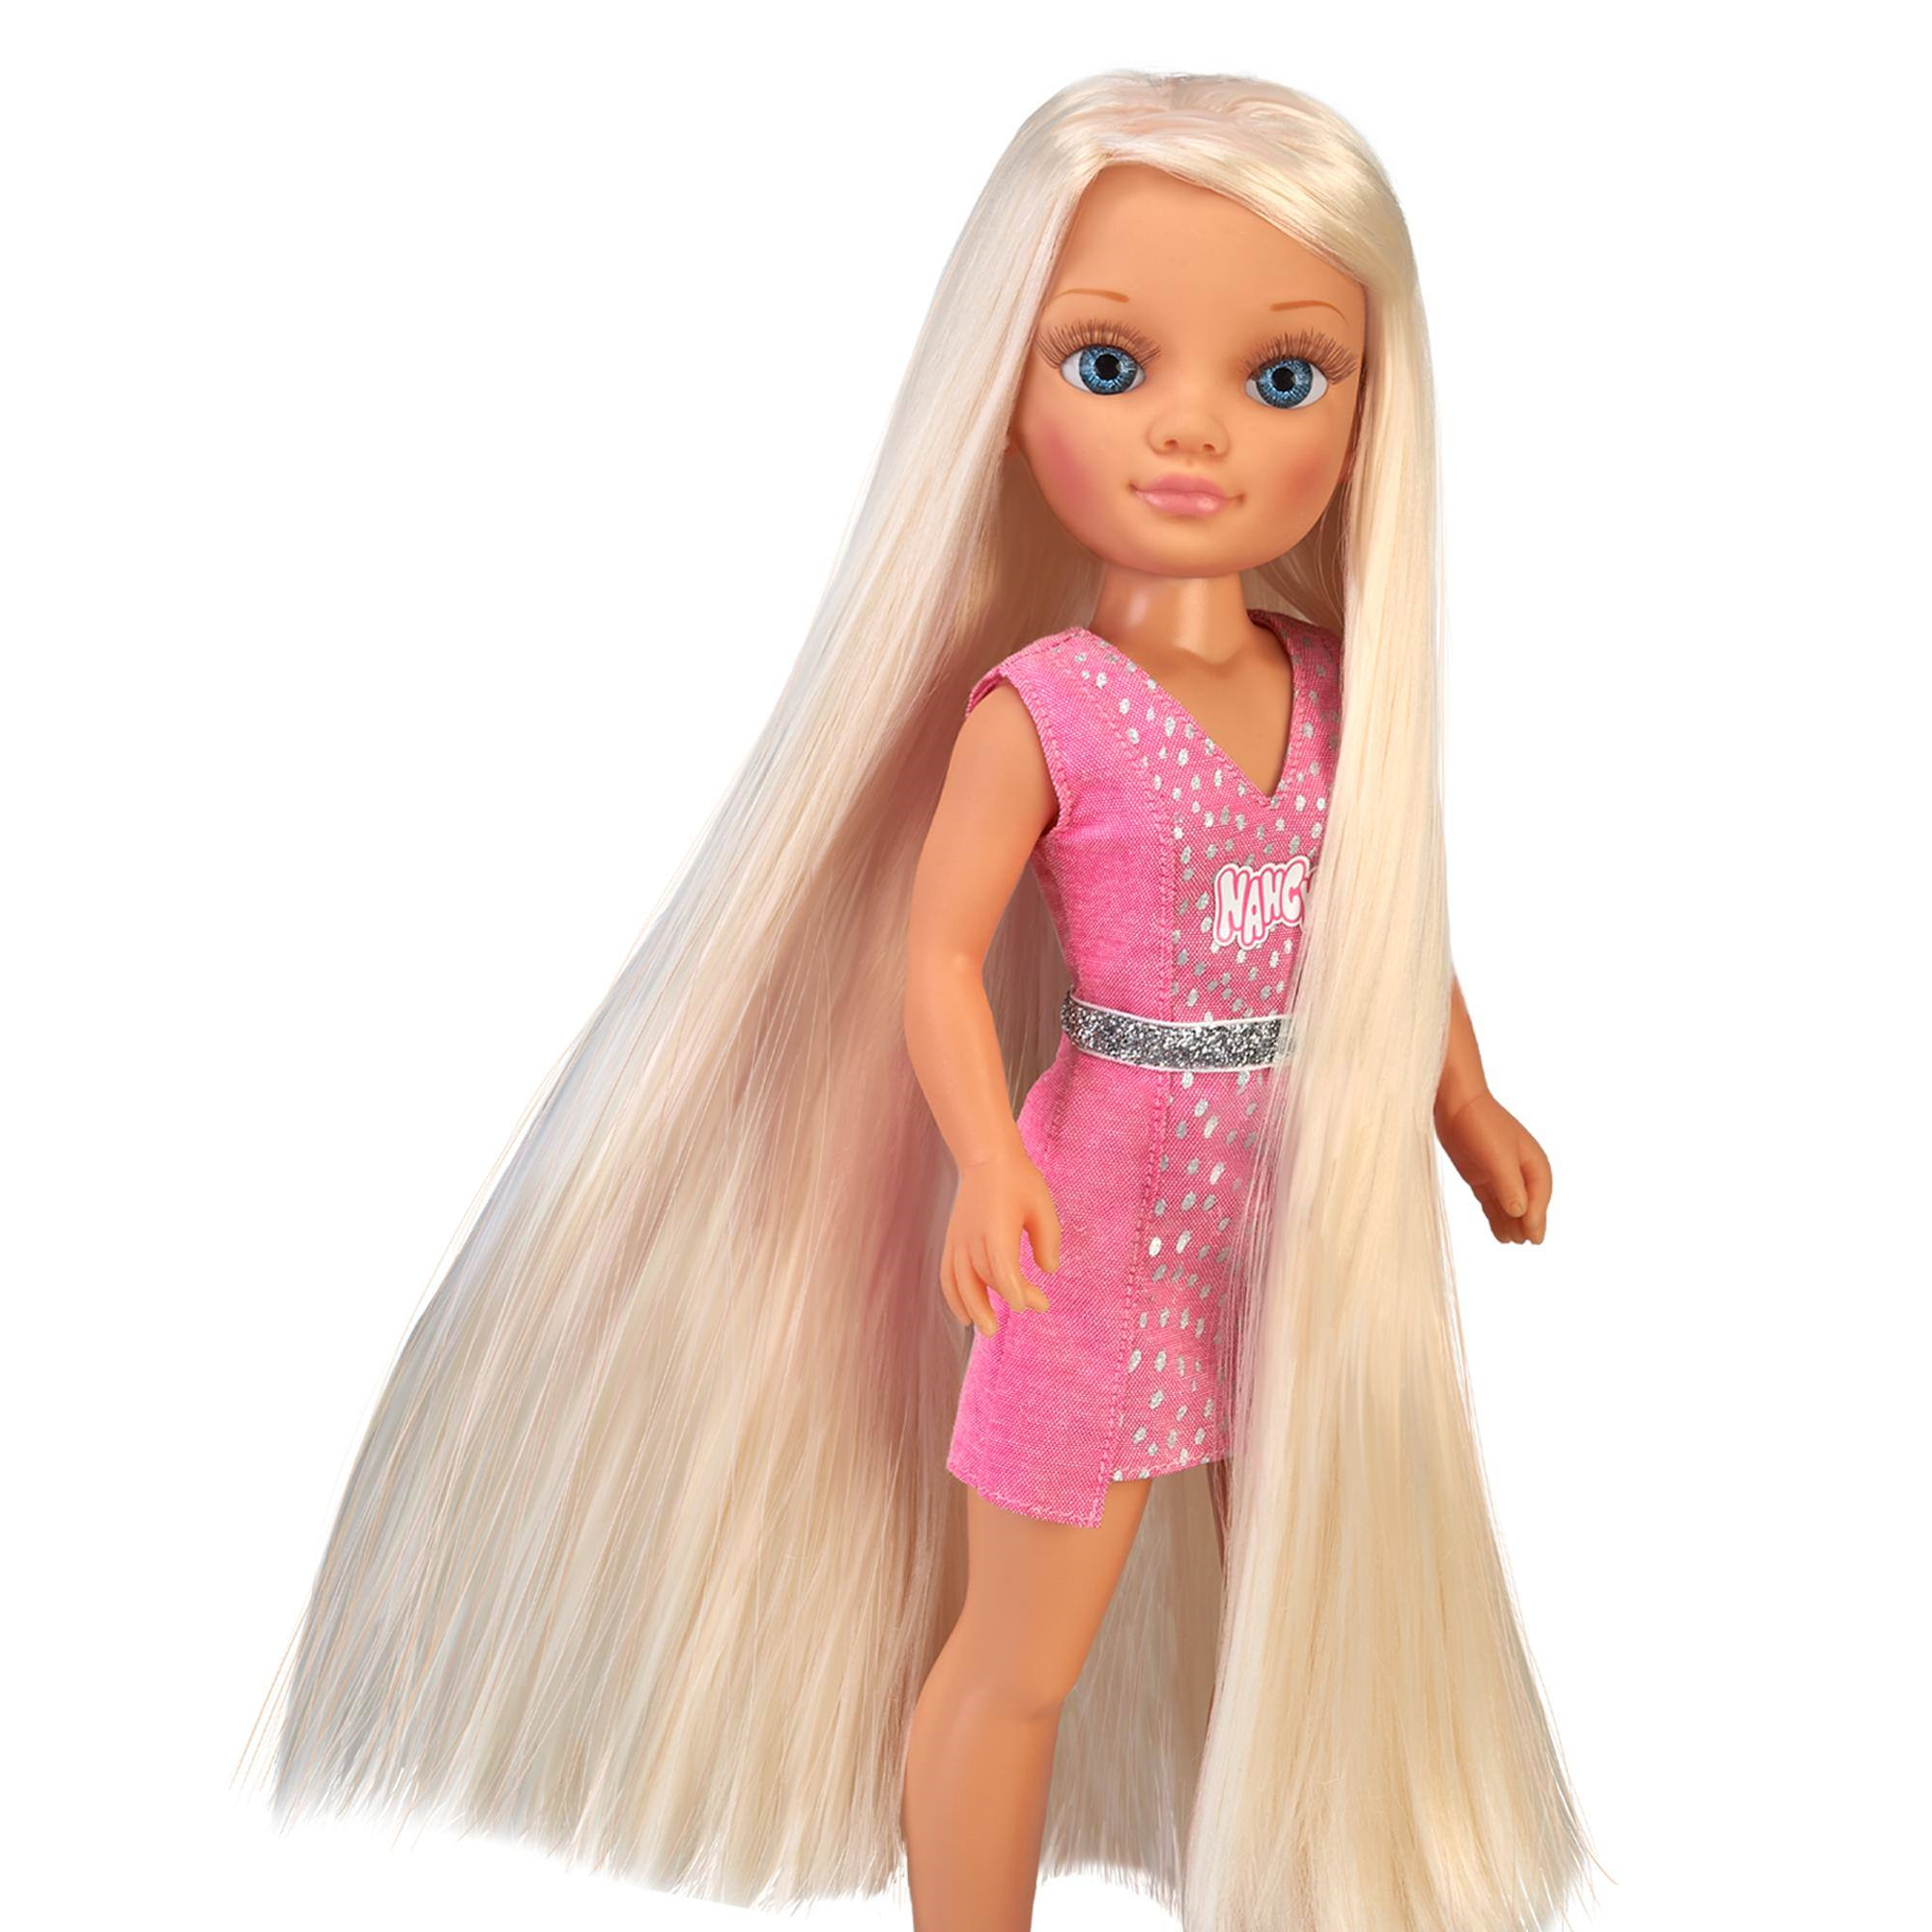 Nancy capelli super lunghi, capelli extra lunghi e accessori - Toys Center